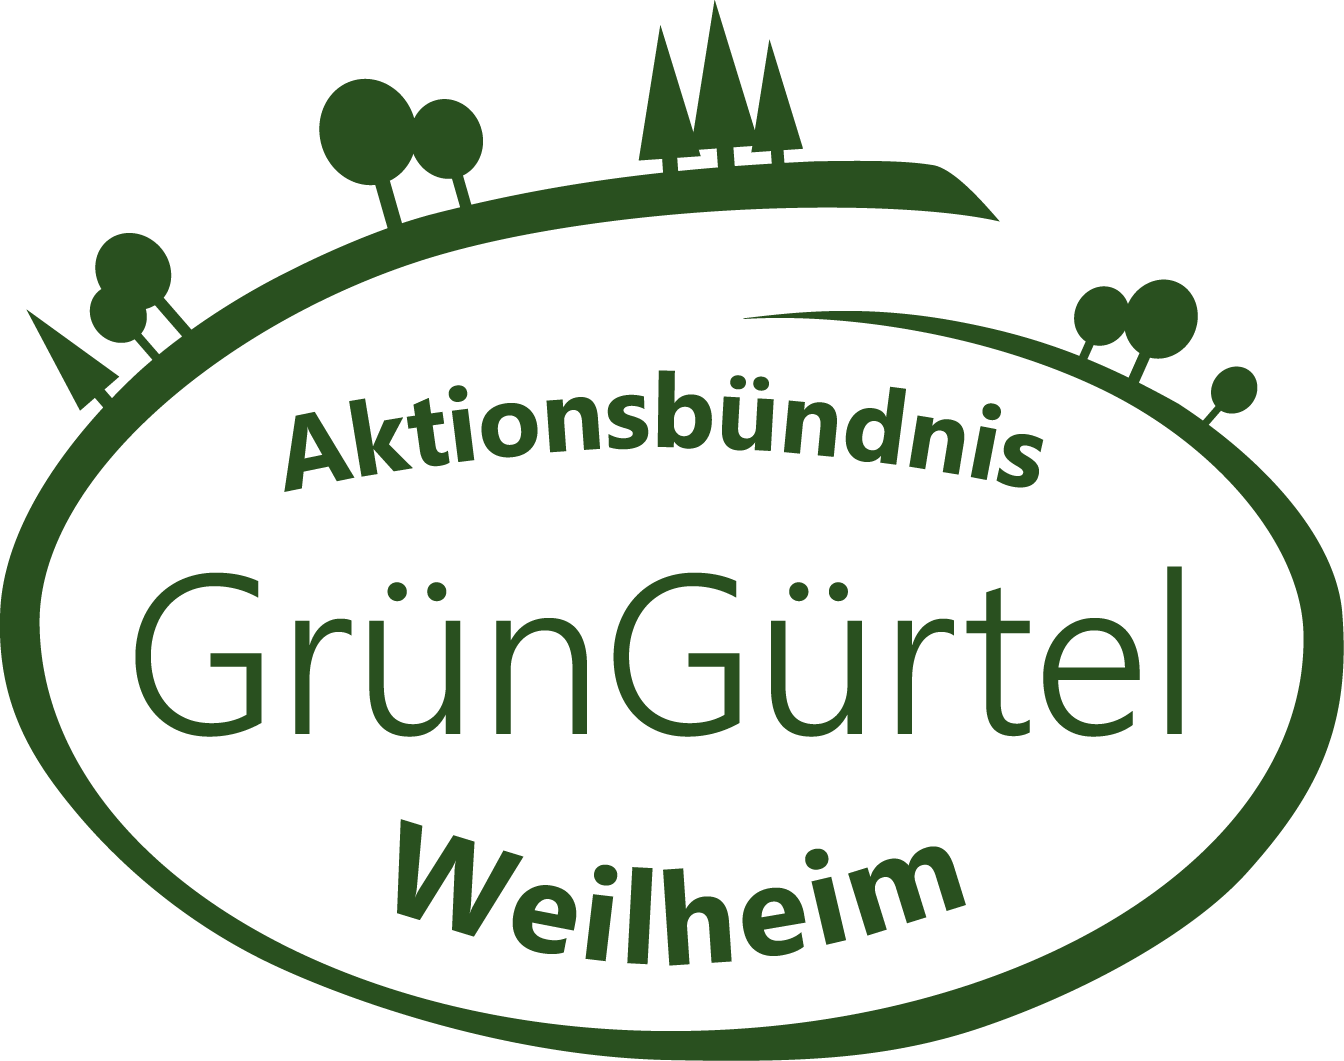 Aktionsbündnis Grüngürtel Weilheim